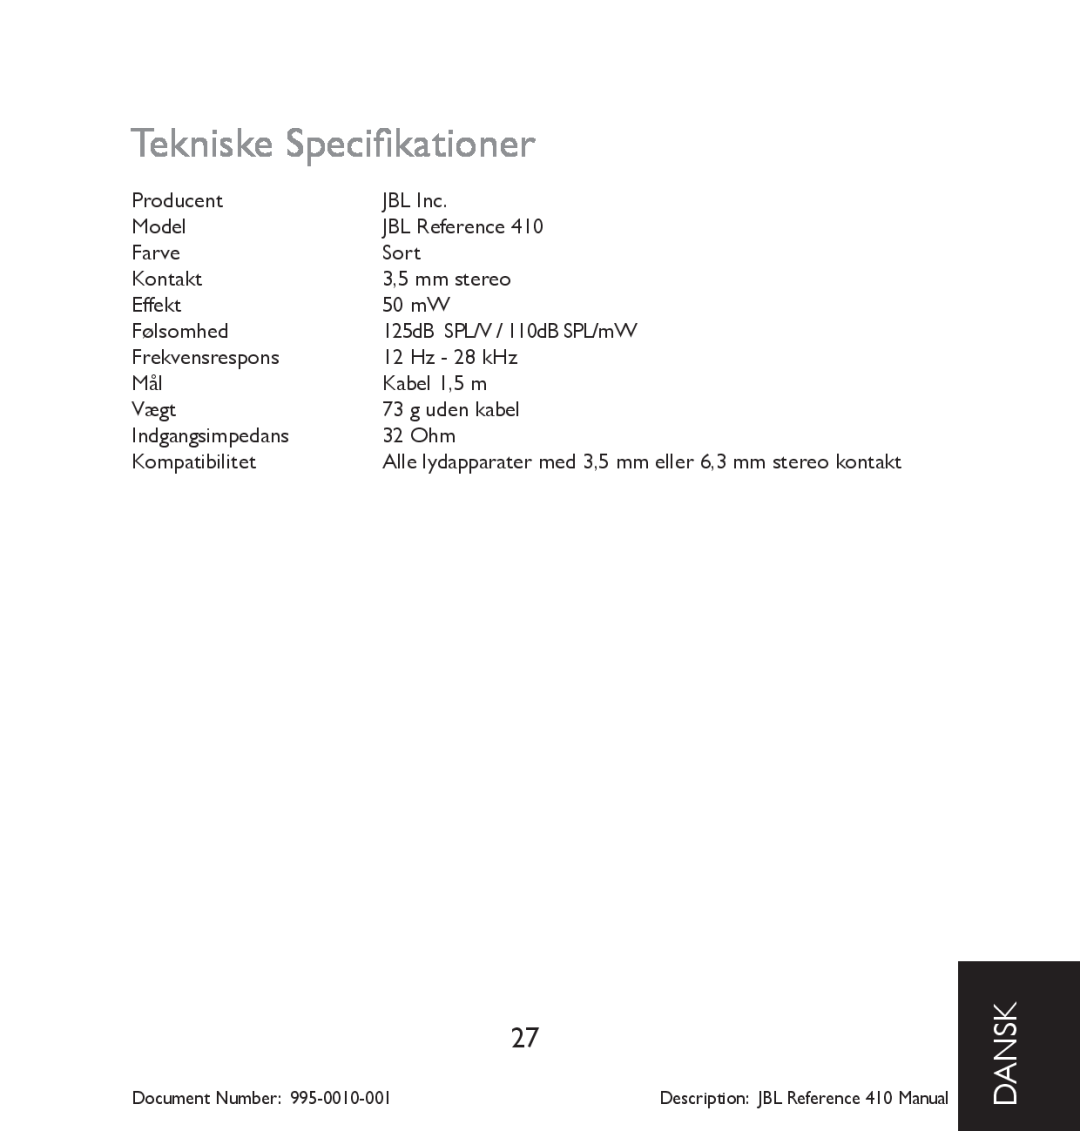 JBL 410 manual Tekniske Specifikationer, dansk 